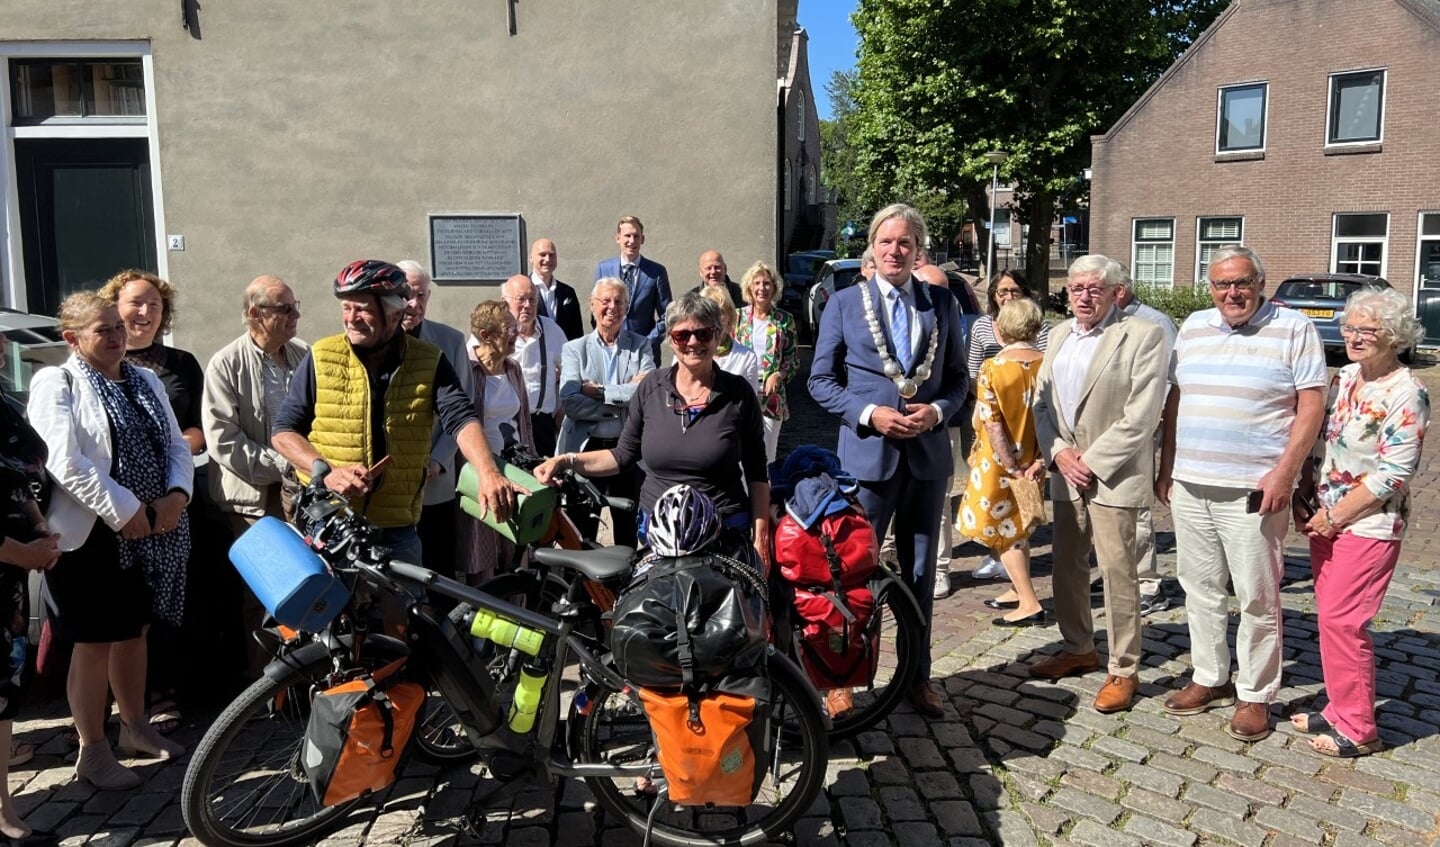 De onthulling  van de gevelsteen kreeg een ludiek tintje doordat twee fietsende toeristen uit Heerenveen door burgemeester Van Oosten hartelijk werden toegesproken.